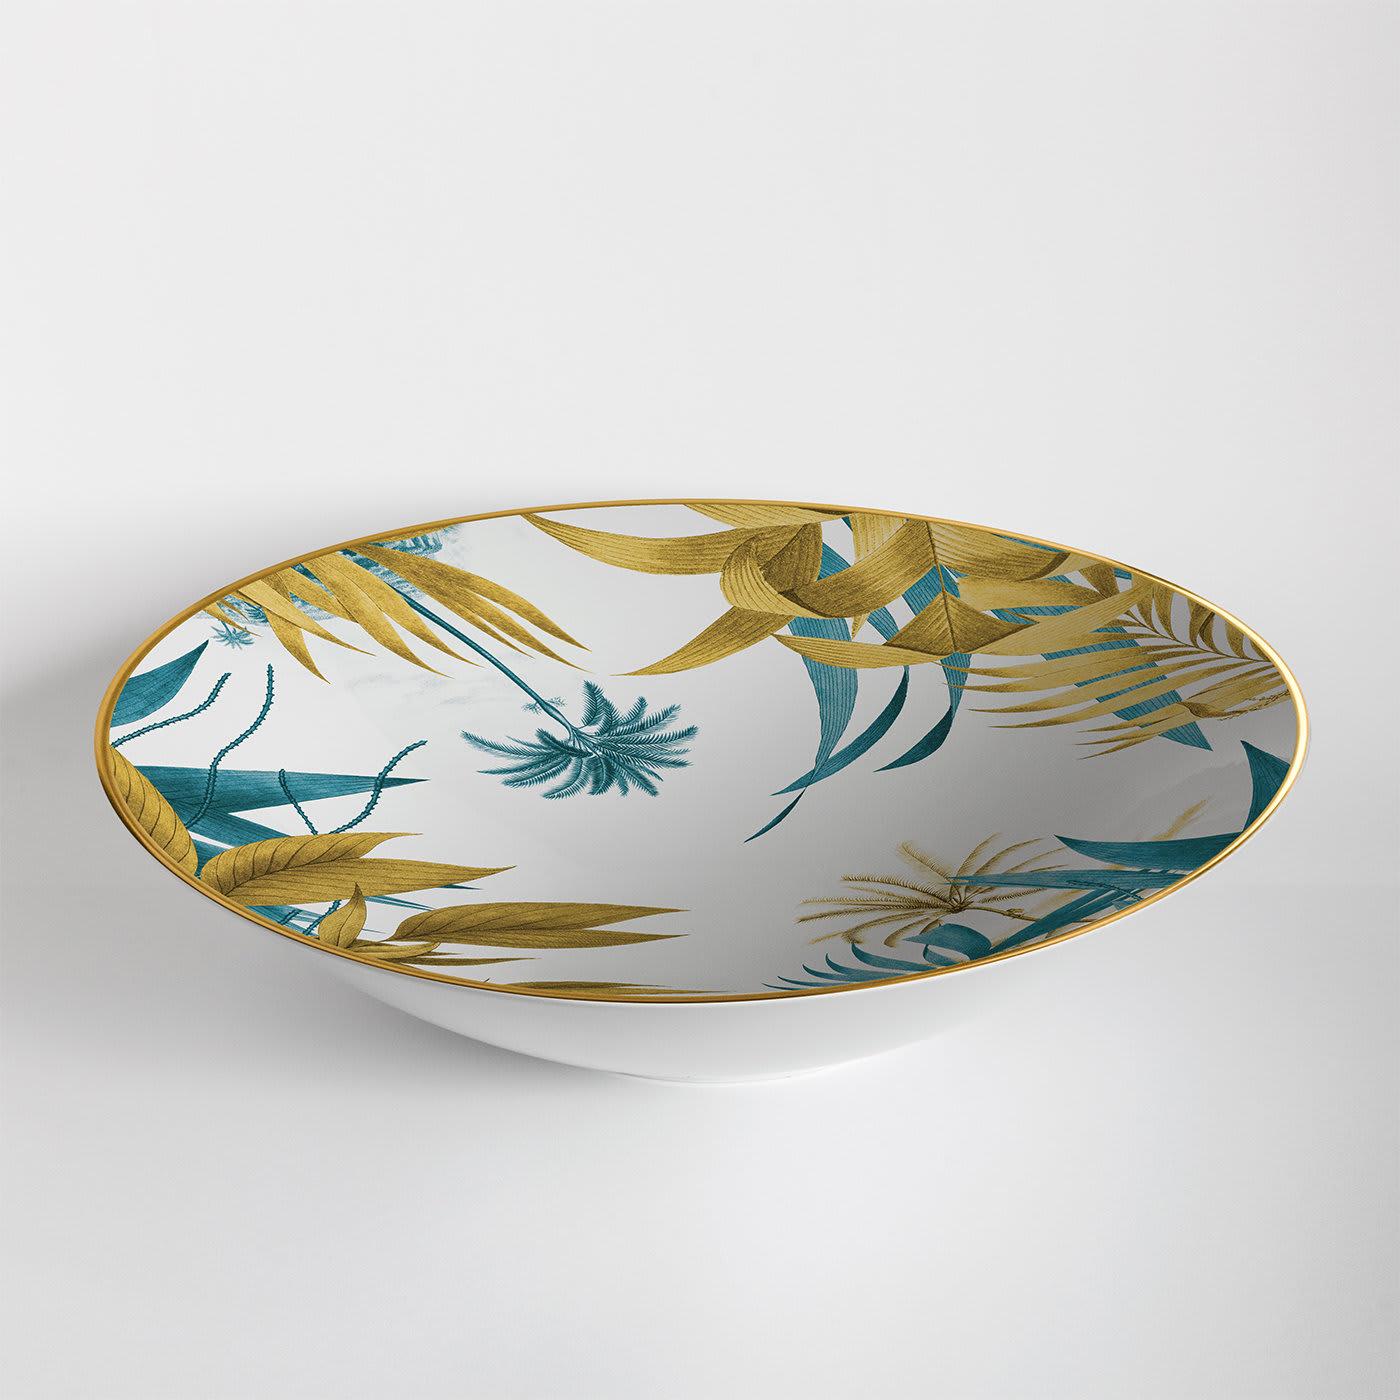 Diese elegante Schale, die als Tafelaufsatz auf einem raffinierten Esstisch steht oder als Servierplatte für Obst verwendet wird, ist eine einzigartige Ergänzung für jede traditionelle oder moderne Einrichtung. Sie ist aus weißem Porzellan